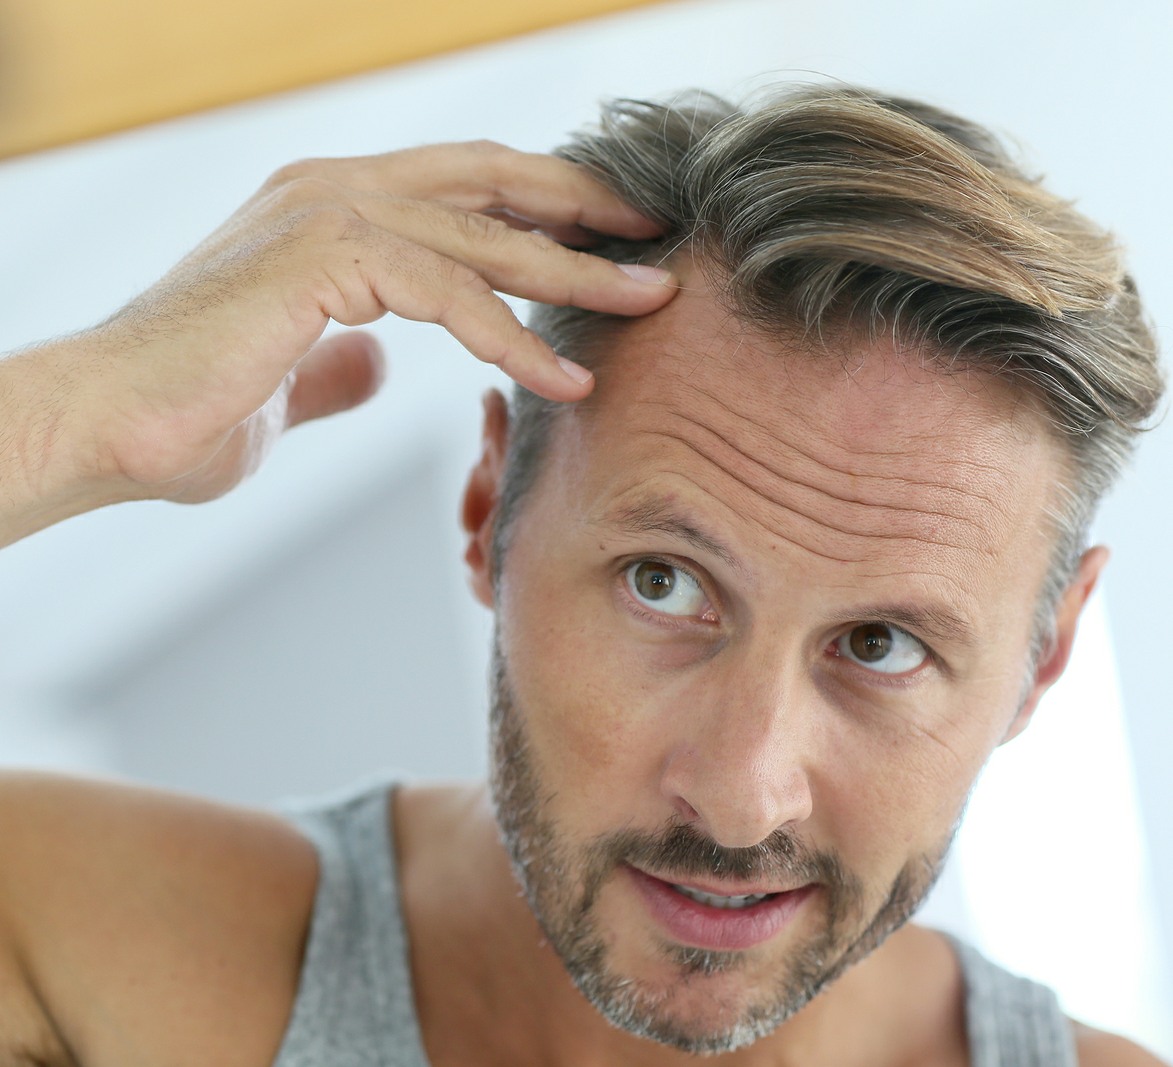 hair restoration for men